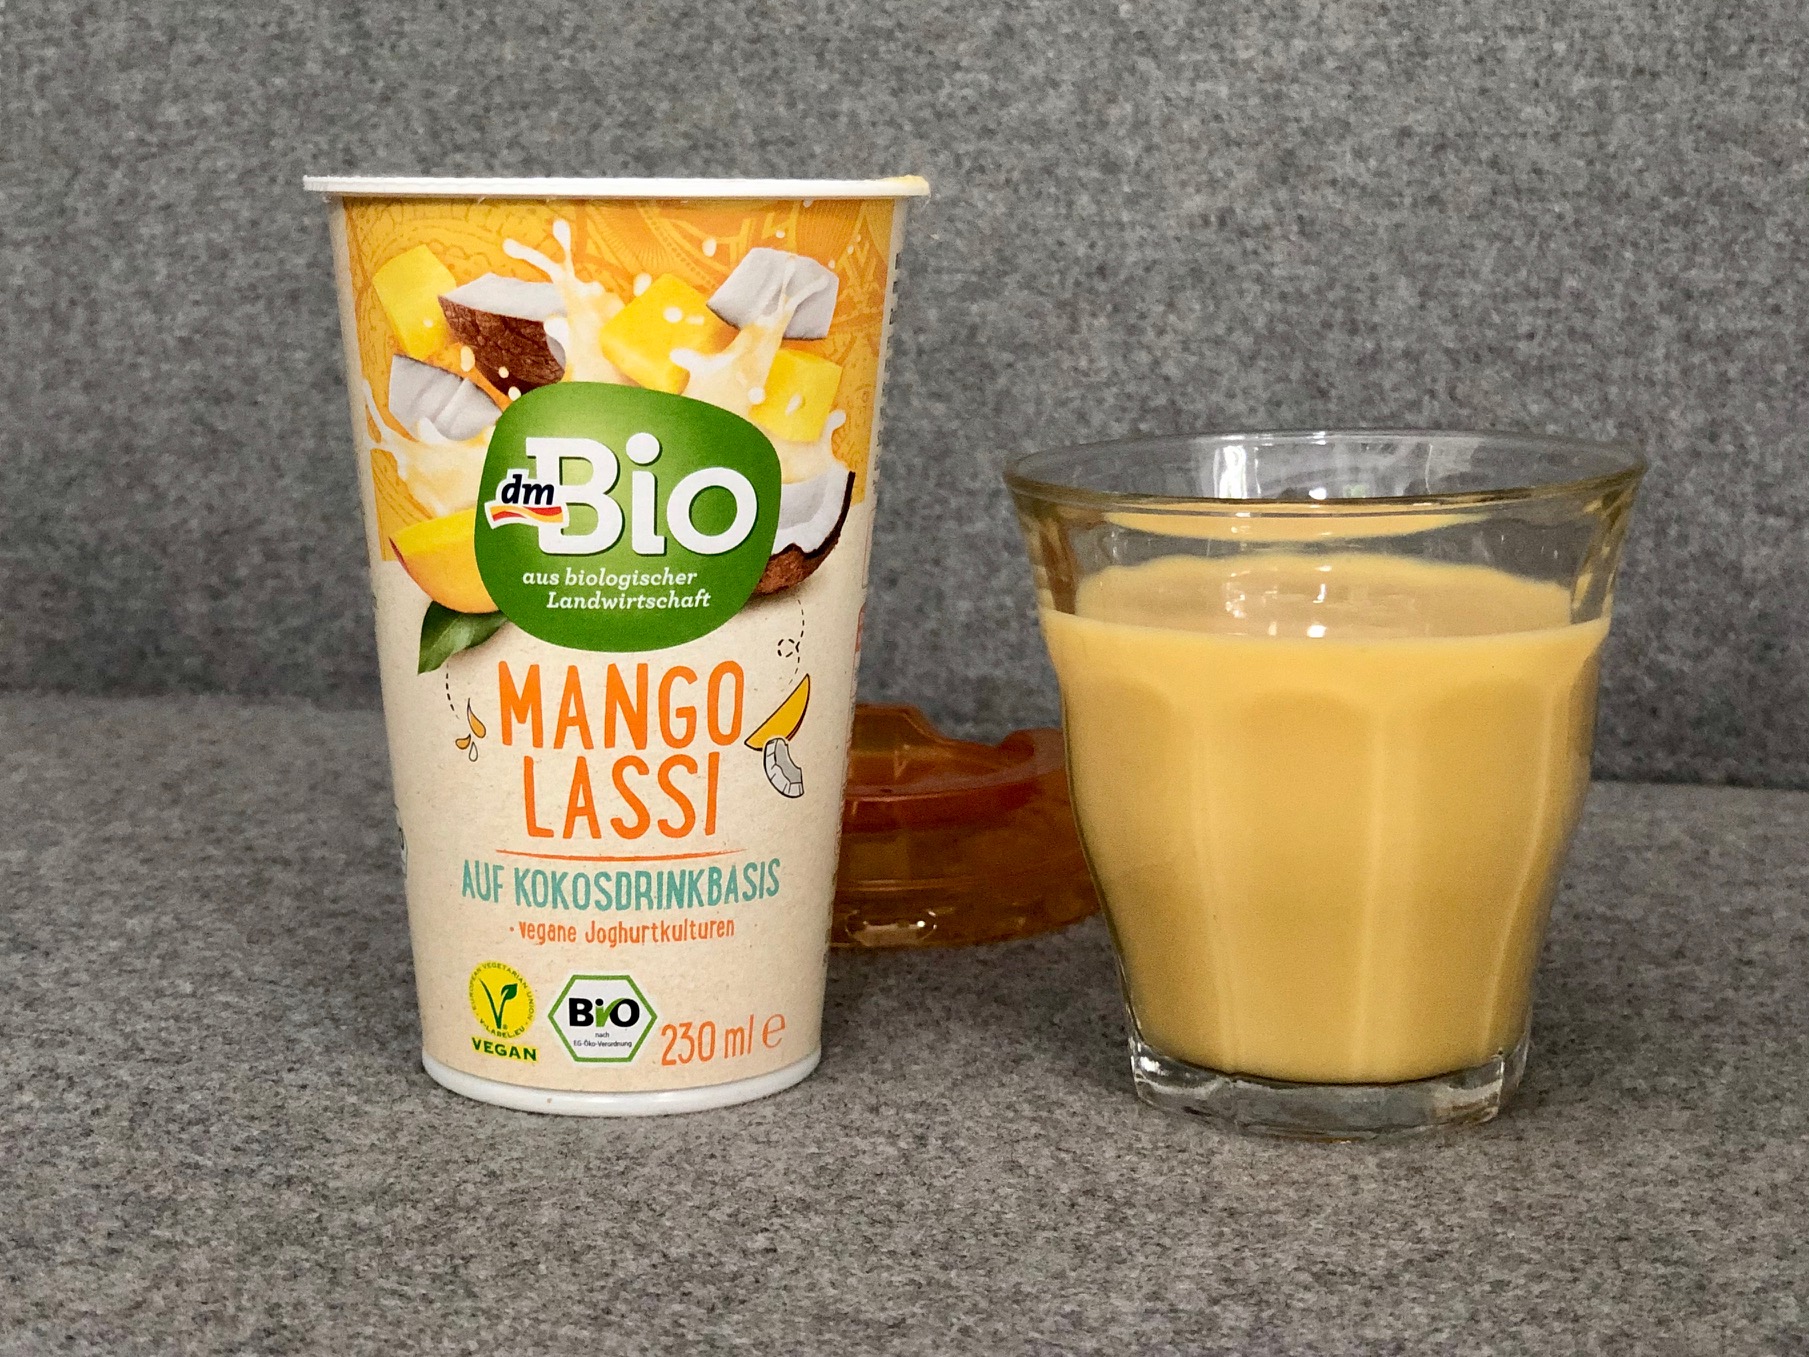 dmBio-Mango-Lassi-